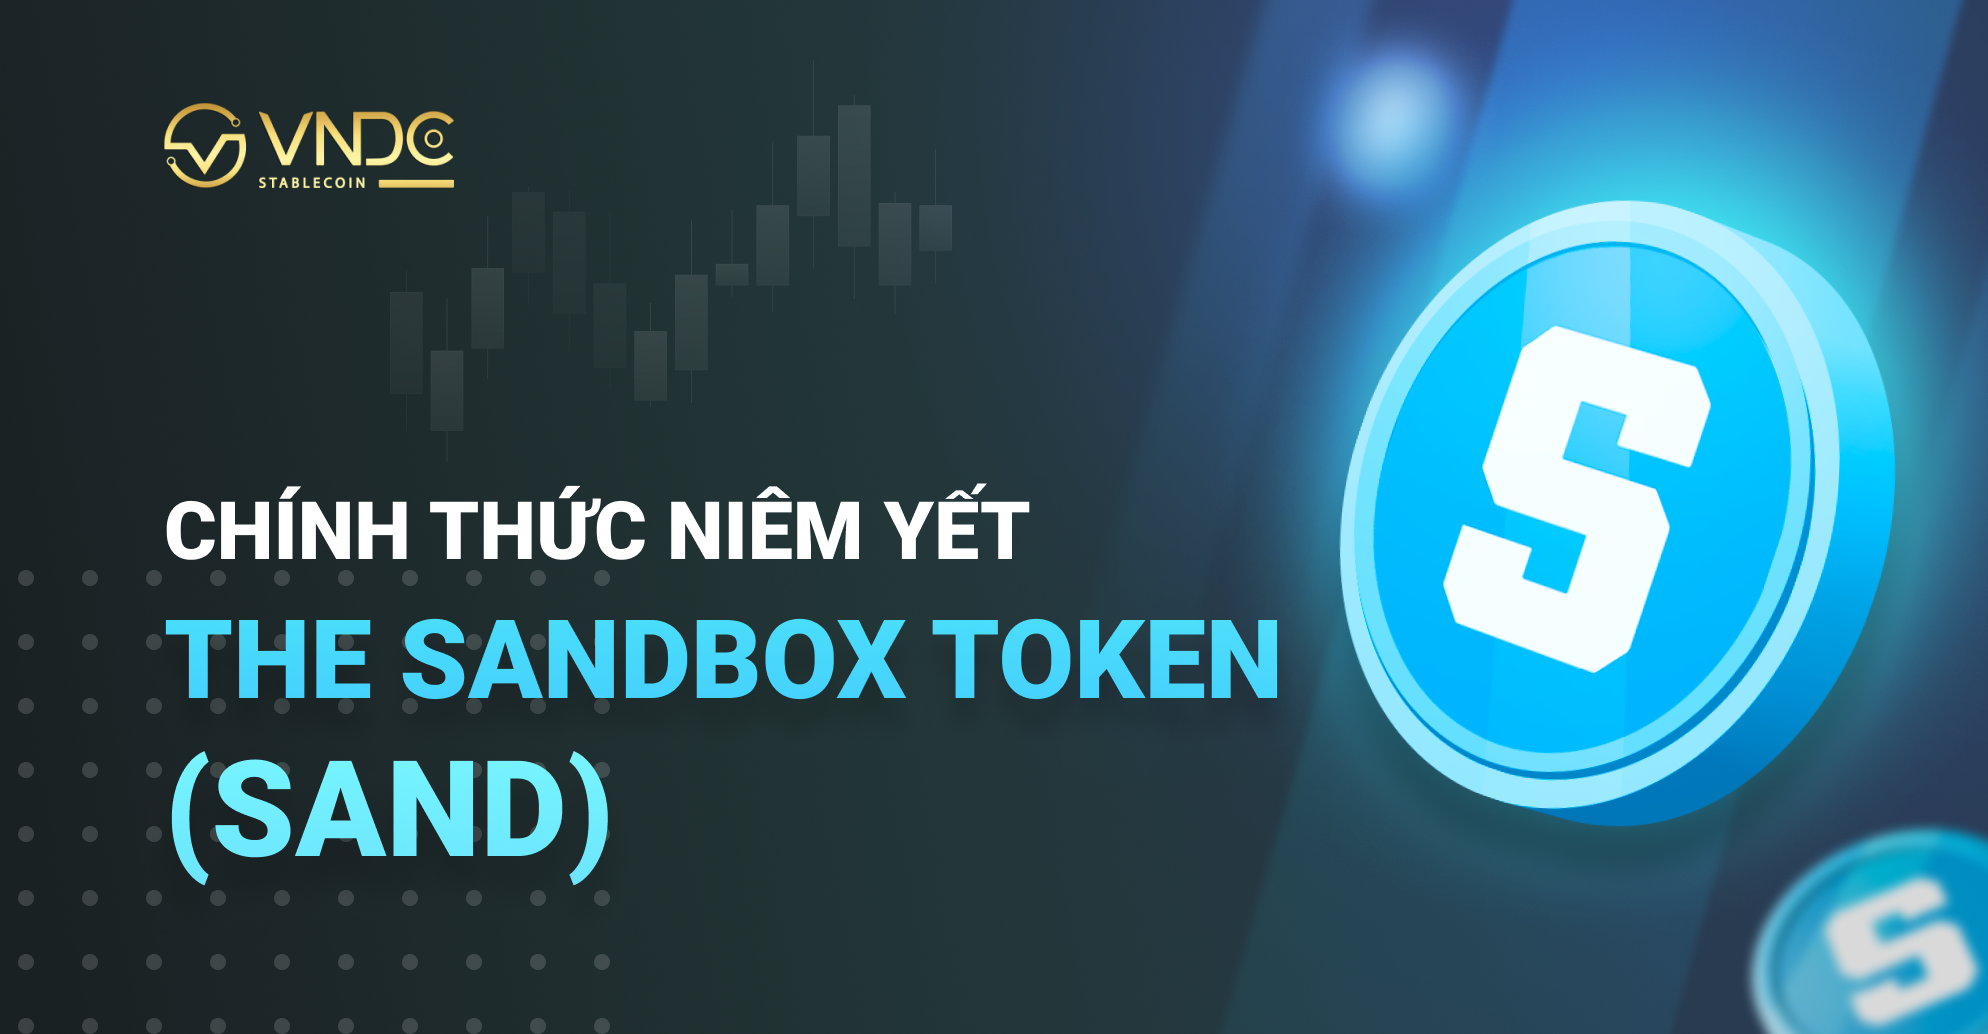 Chính thức niêm yết The Sandbox Token (SAND) trên VNDC Wallet